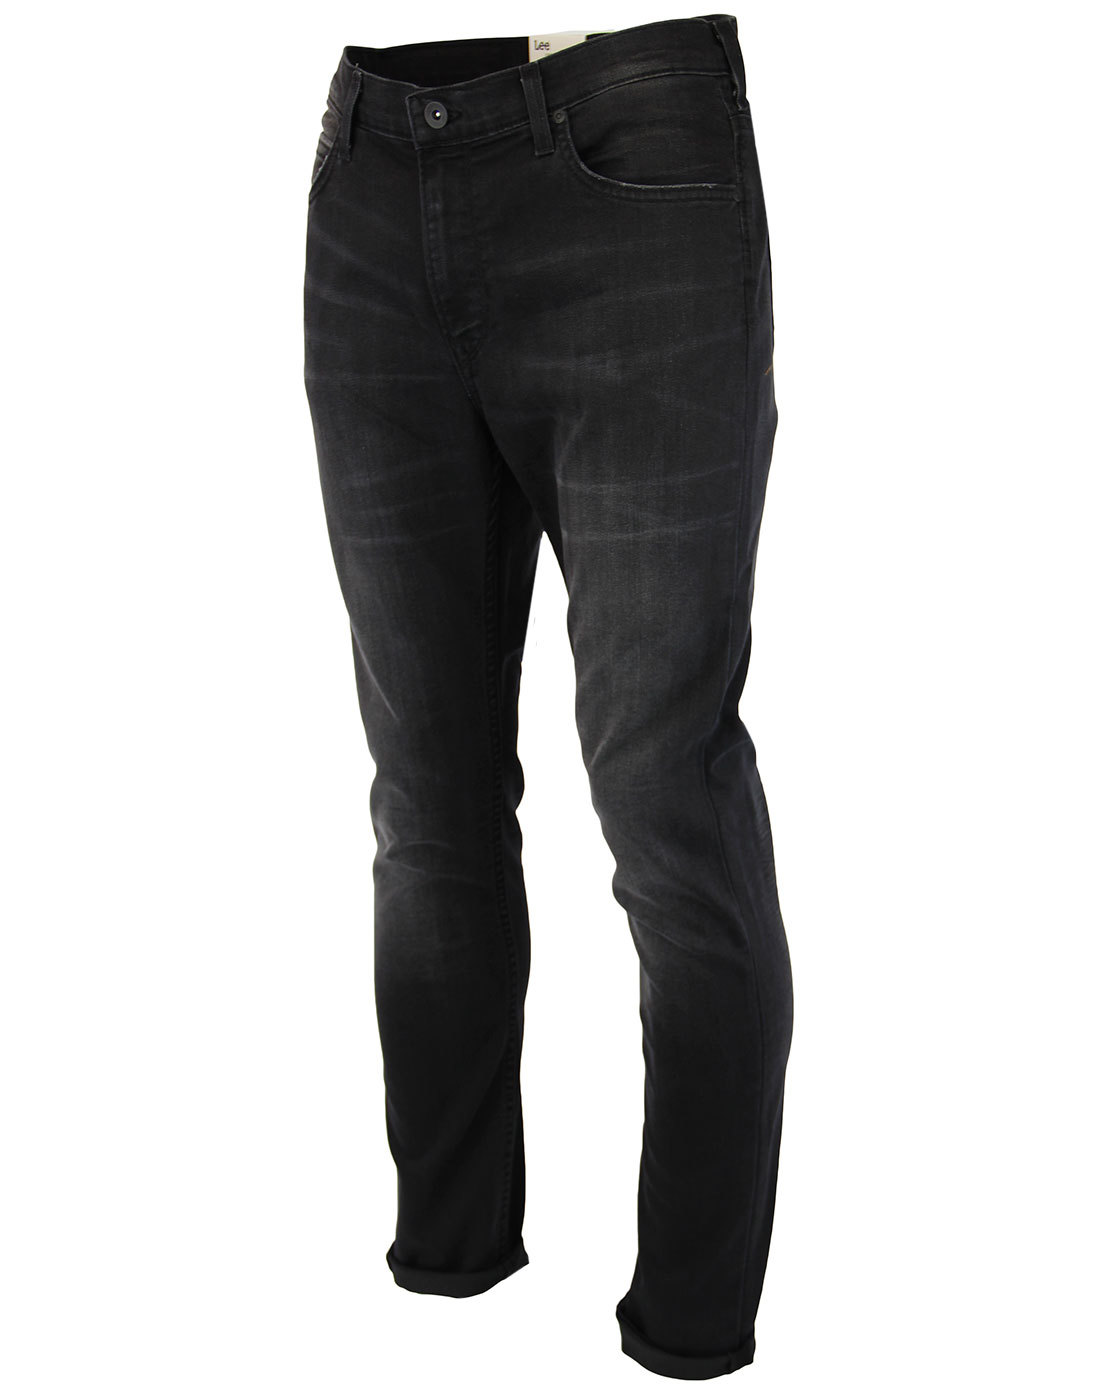 LEE Rider Men's Retro Indie Mod Black Worn Slim Denim Jeans